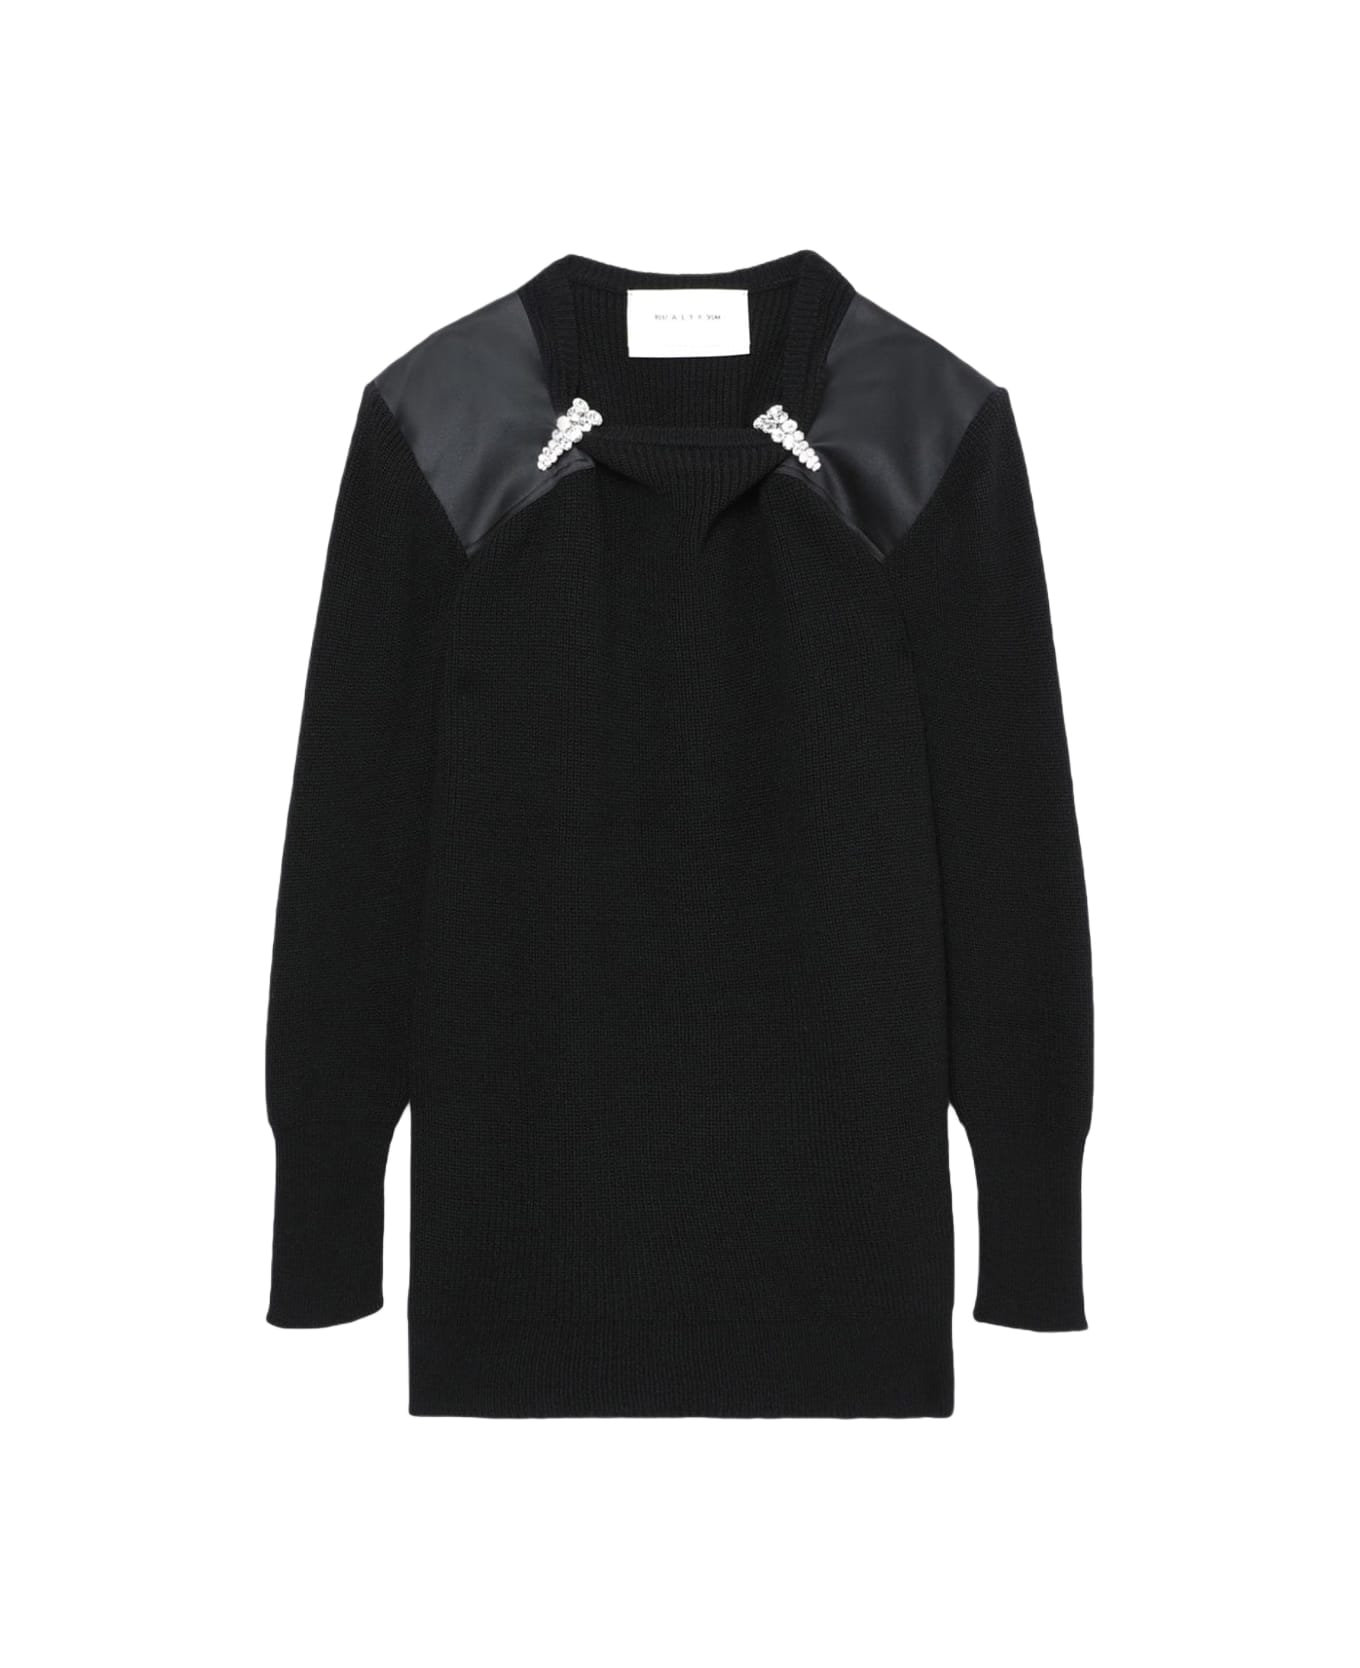 1017 ALYX 9SM Nylon Panel Knit Dress Black rib-knitted dress with crystals detail - Nylon panel knit dress - Nero